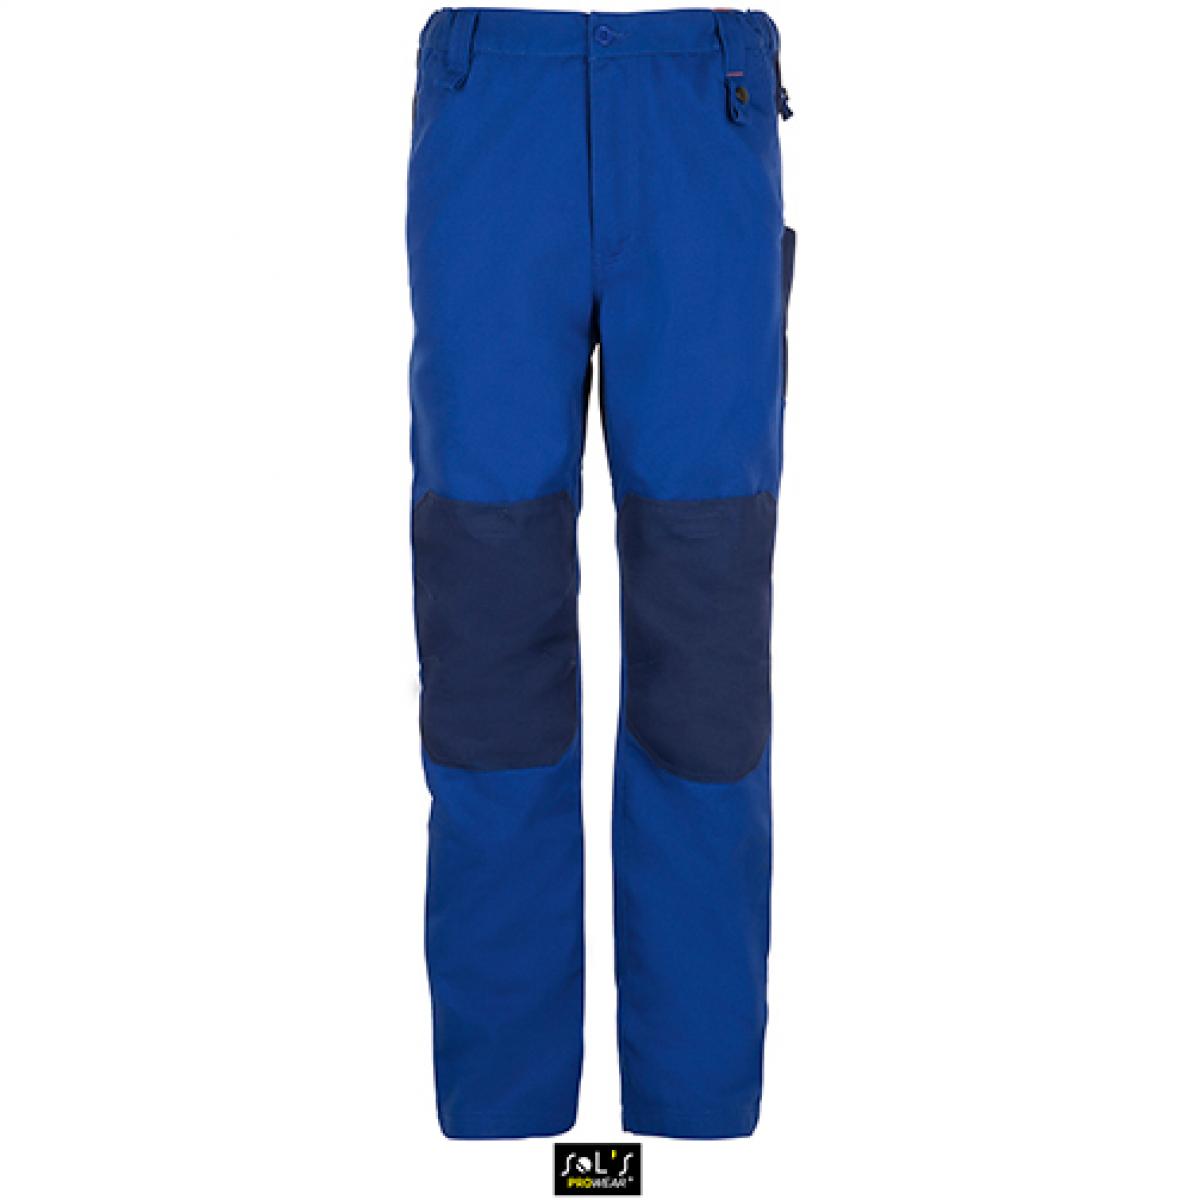 Hersteller: SOLs ProWear Herstellernummer: 01560 Artikelbezeichnung: Men´s Workwear Trousers - Metal Pro Arbeitshose Farbe: Bugatti Blue/Navy Pro